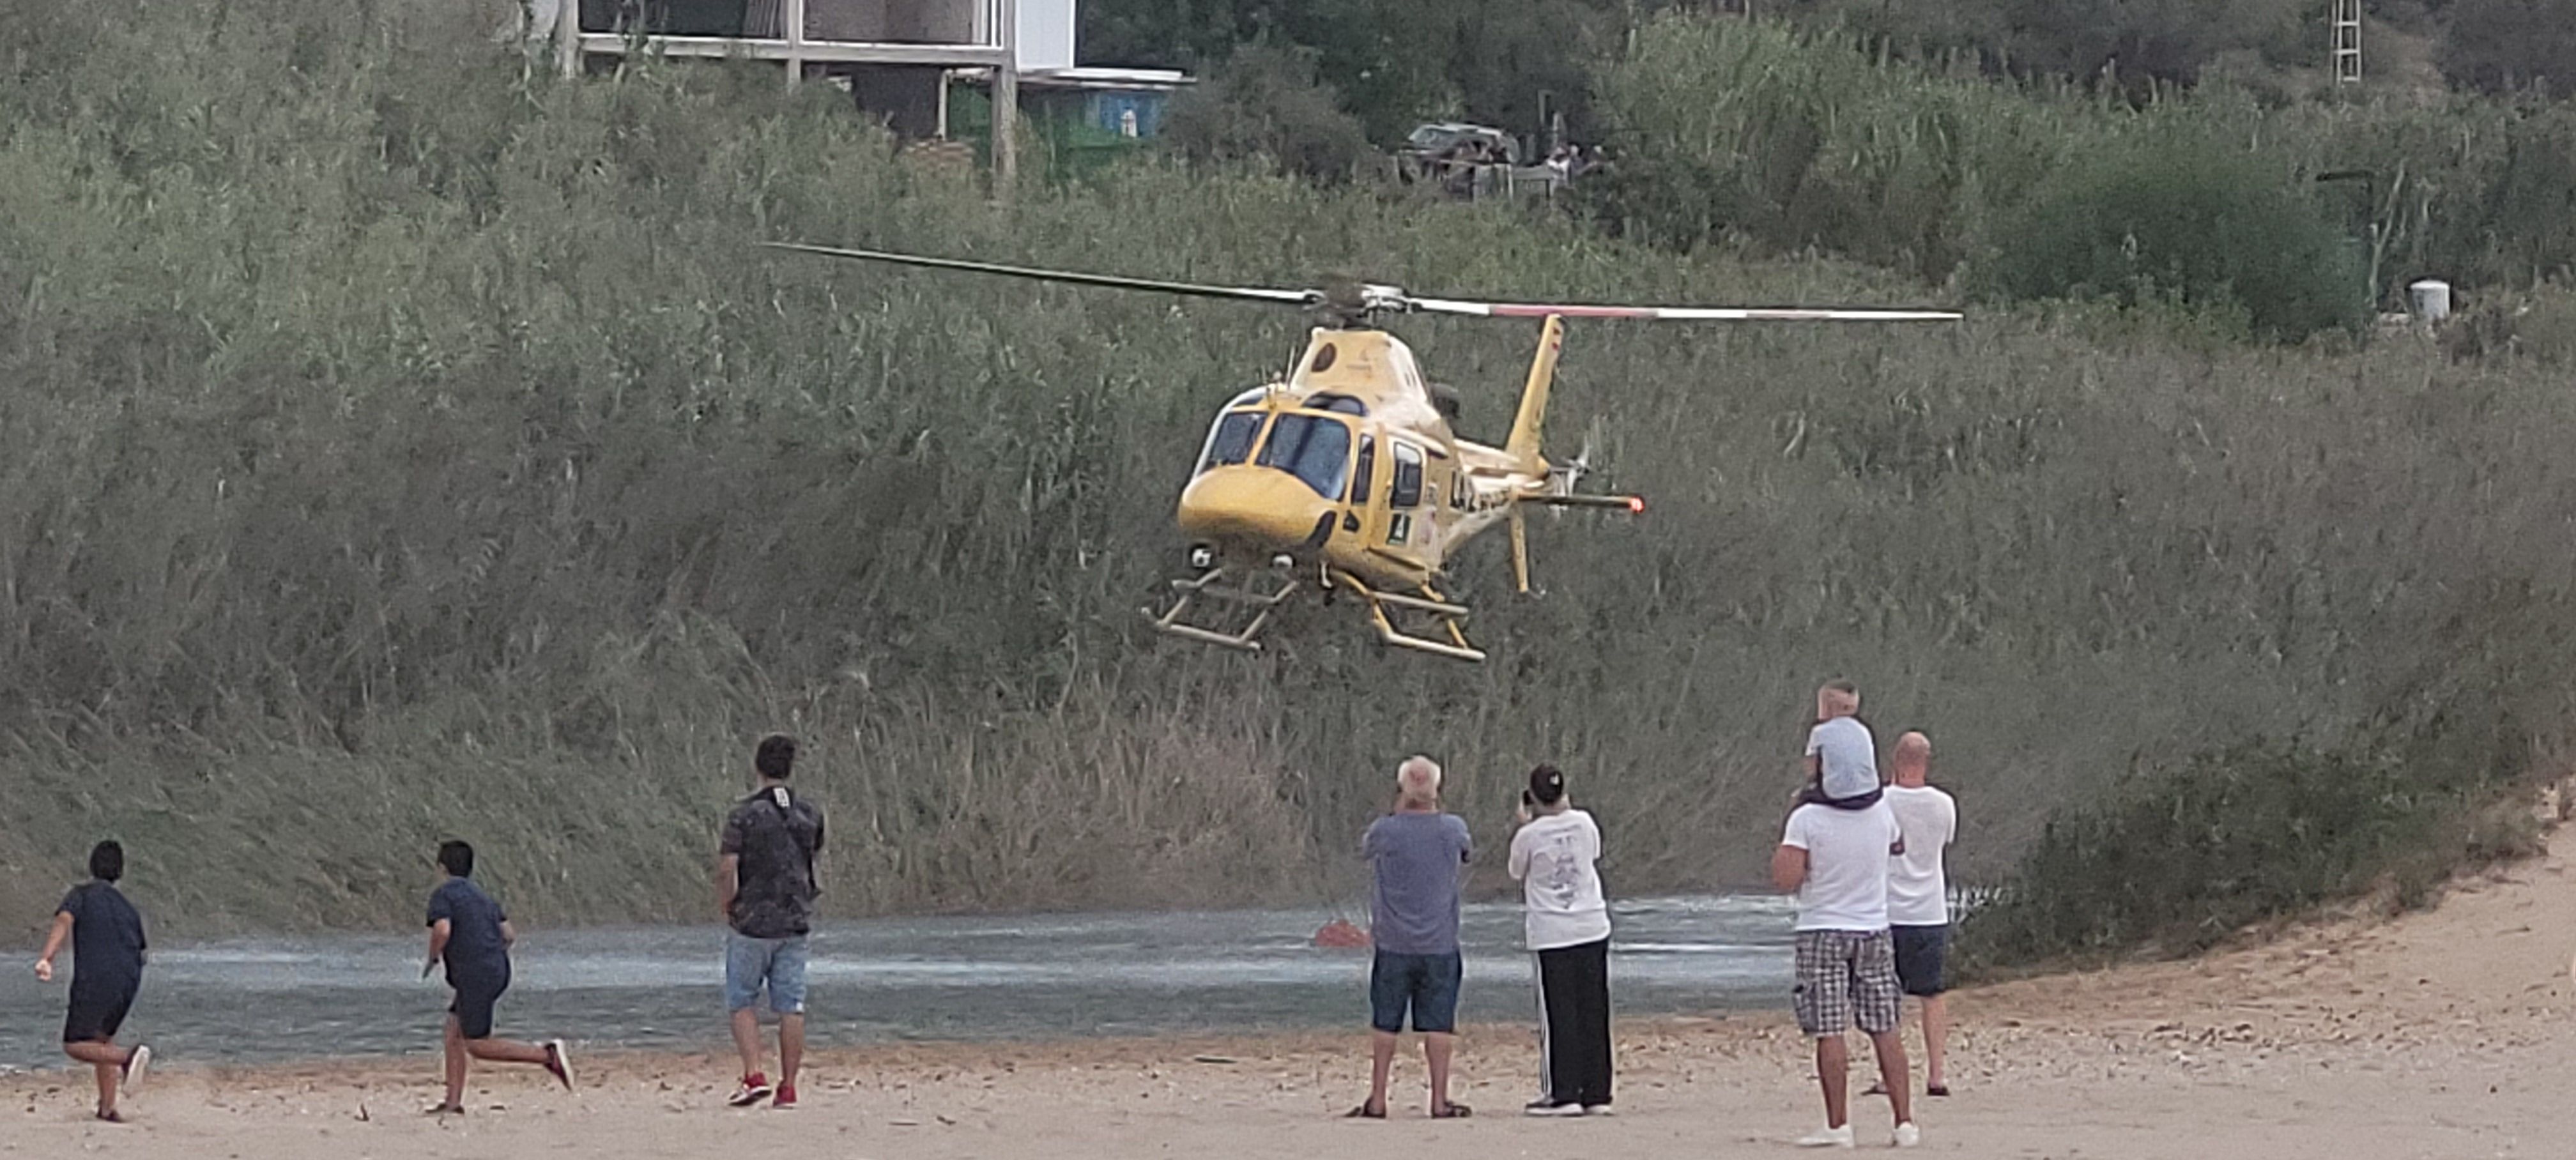 La recogida de agua del helicóptero del Infoca, la 'atracción' dominical en Getares